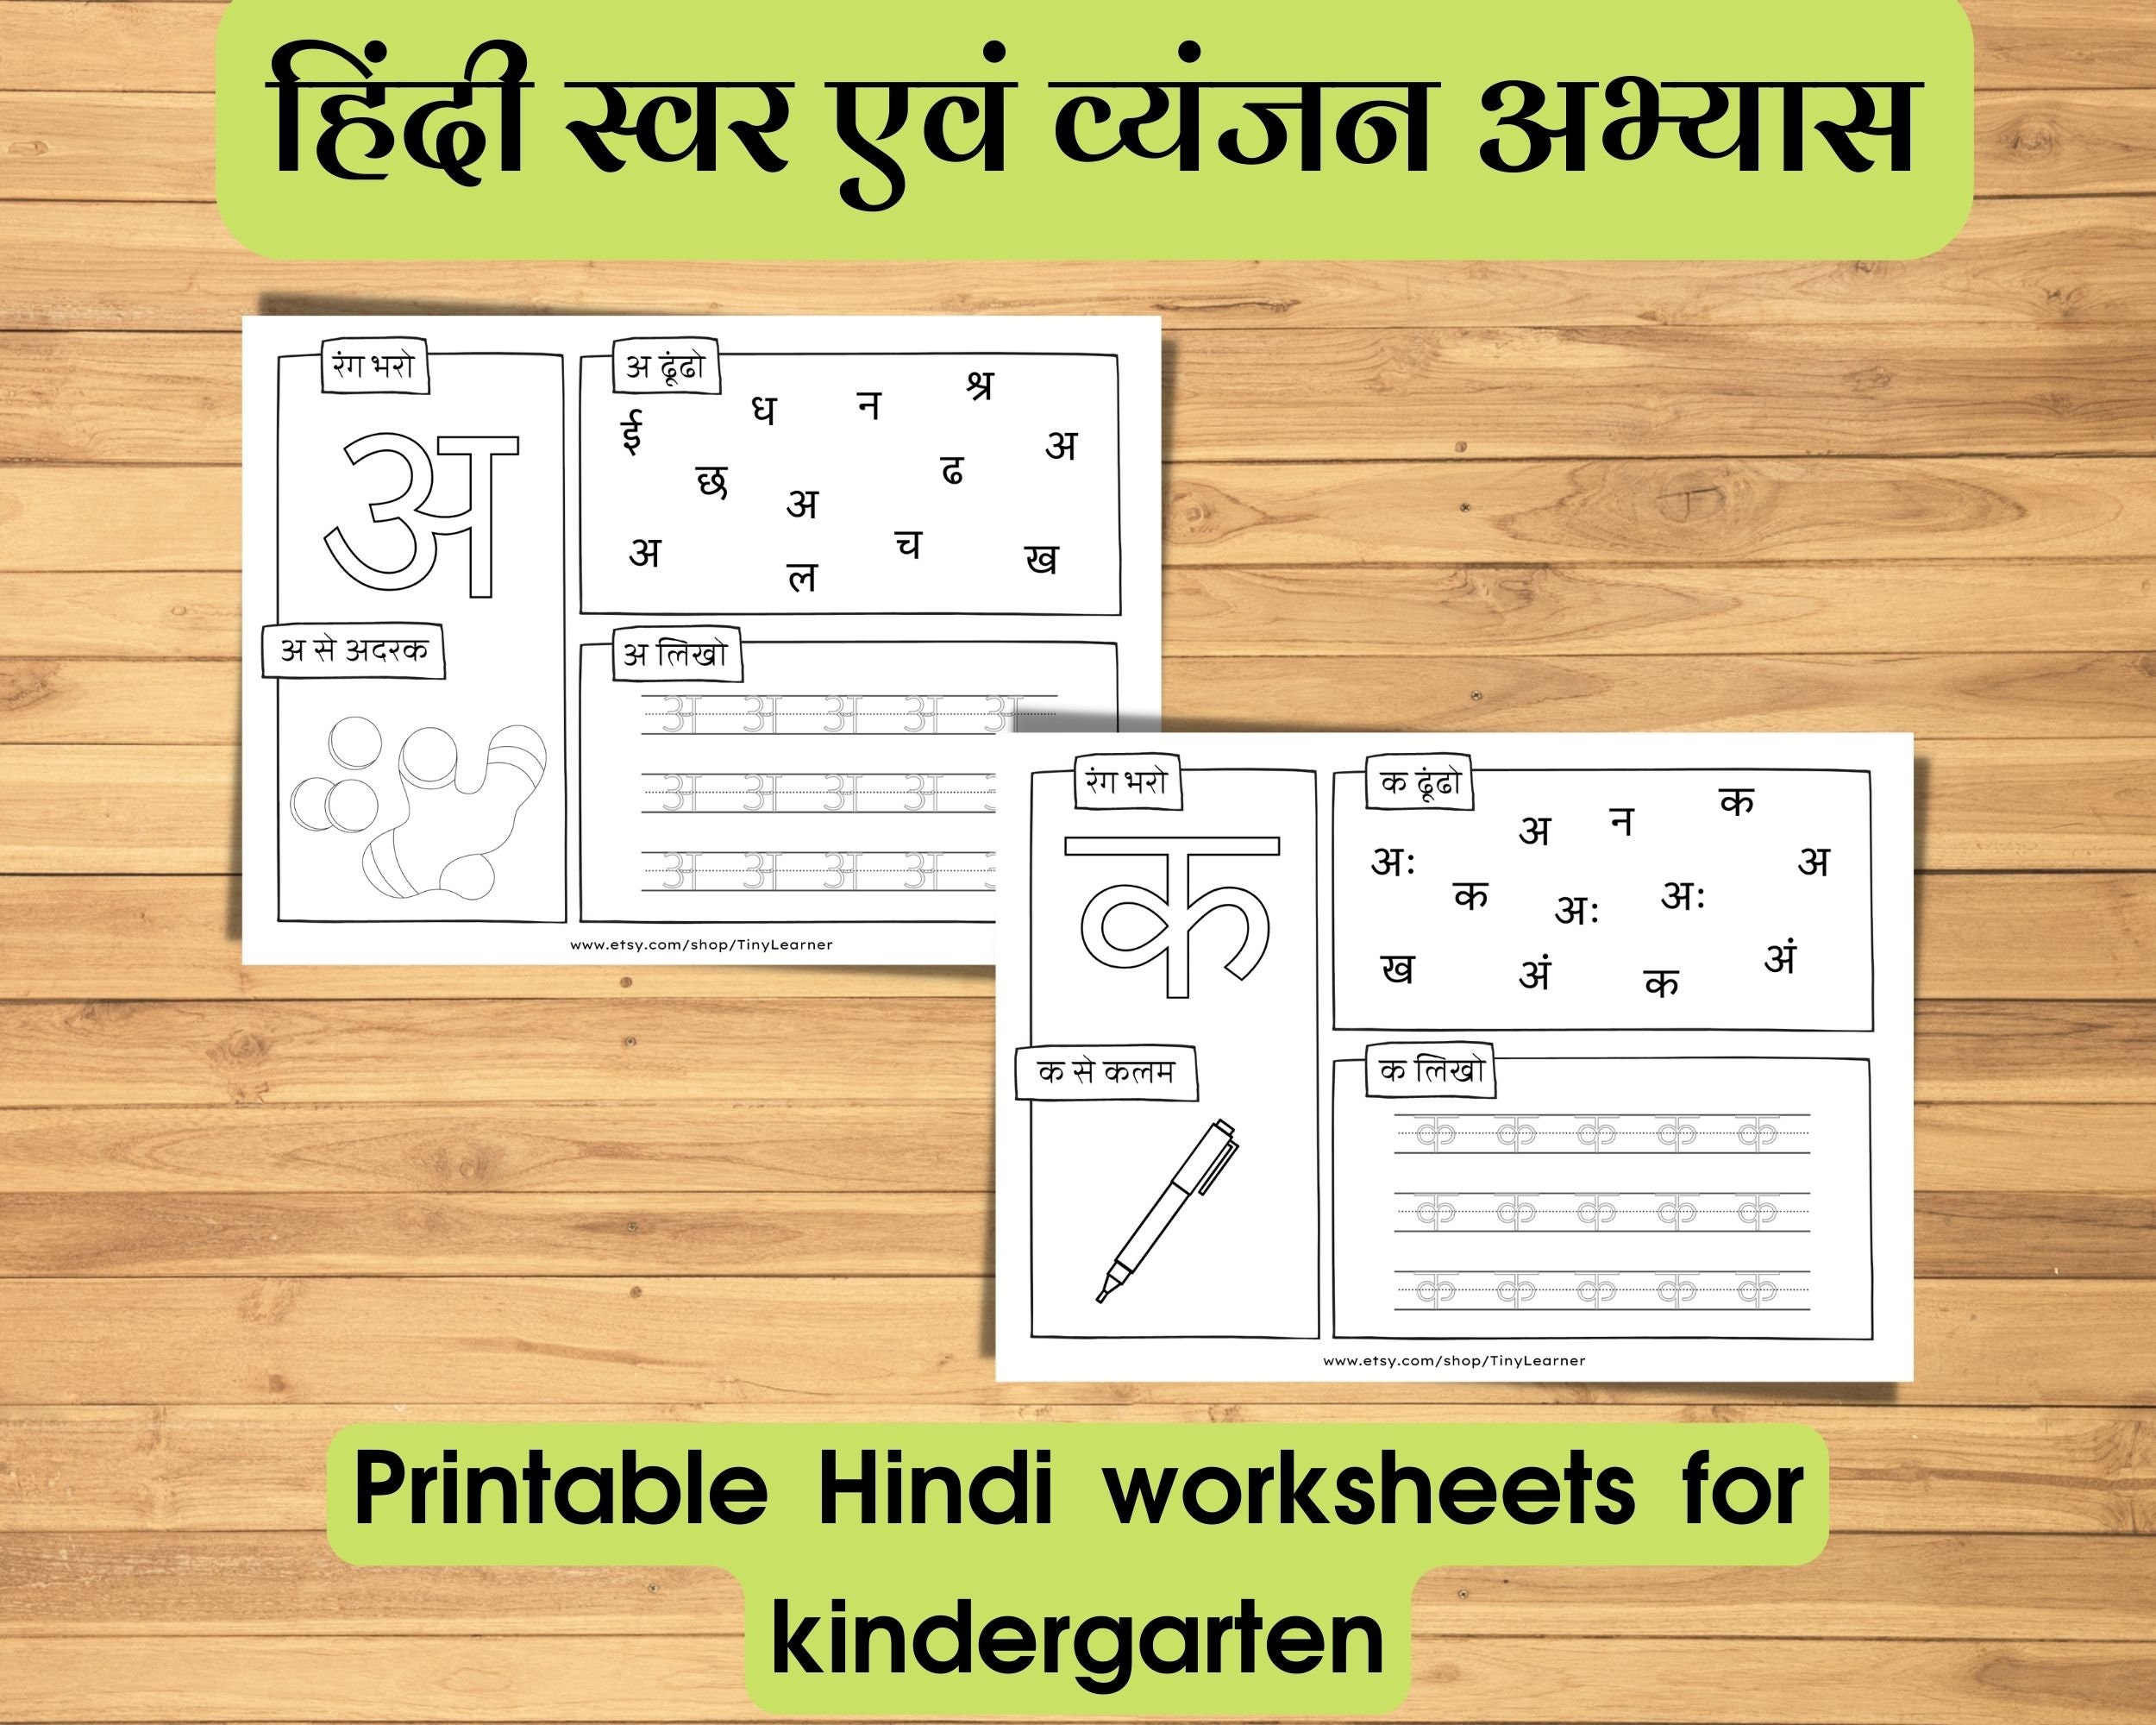 Kruti Dev Hindi Typing Software free Download 2023